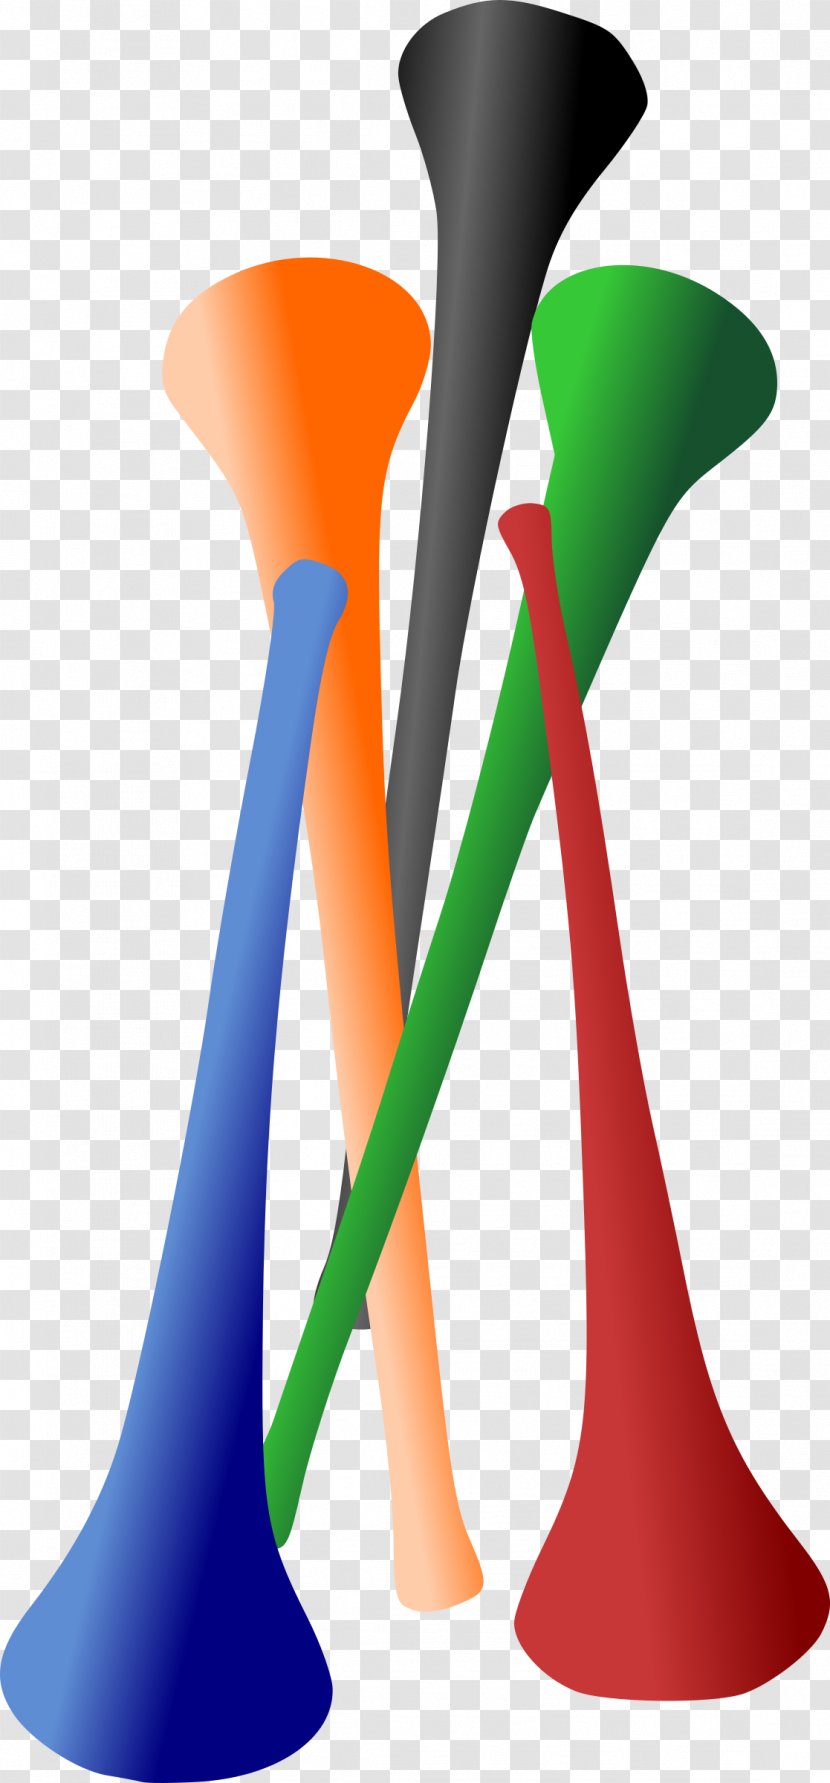 Vuvuzela Musical Instruments Clip Art - Flower Transparent PNG